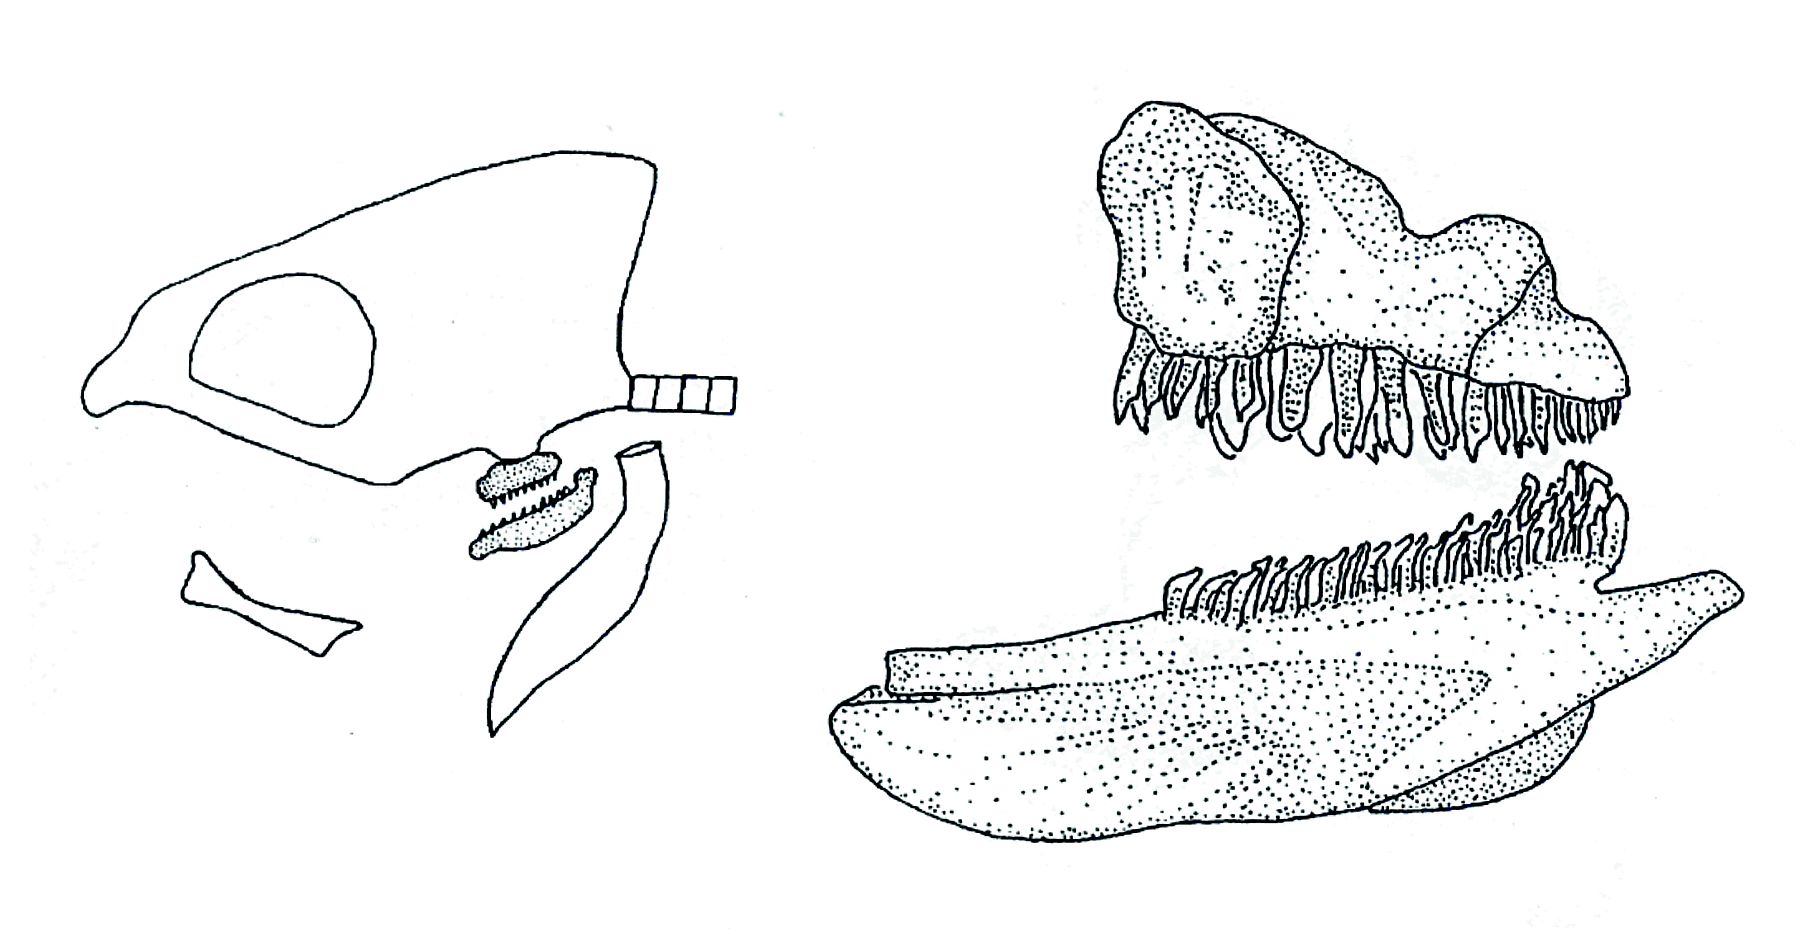 A bölcsőszájú halak zsigeri állkapcsa és annak elhelyezkedése a koponyában